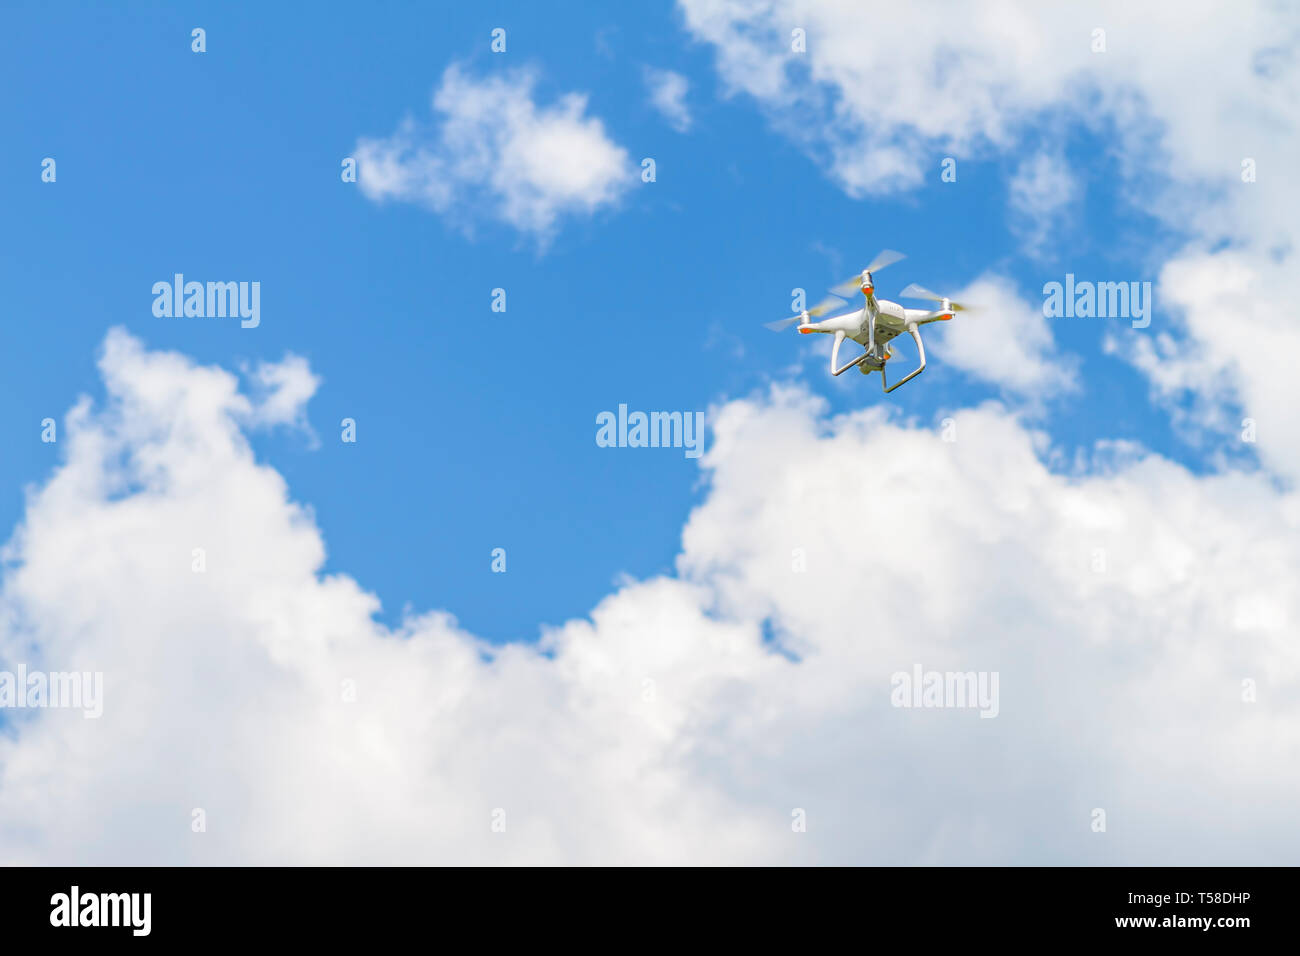 Weiß drone Quad copter mit hochauflösenden Digitalkamera fliegen in den blauen Himmel Stockfoto